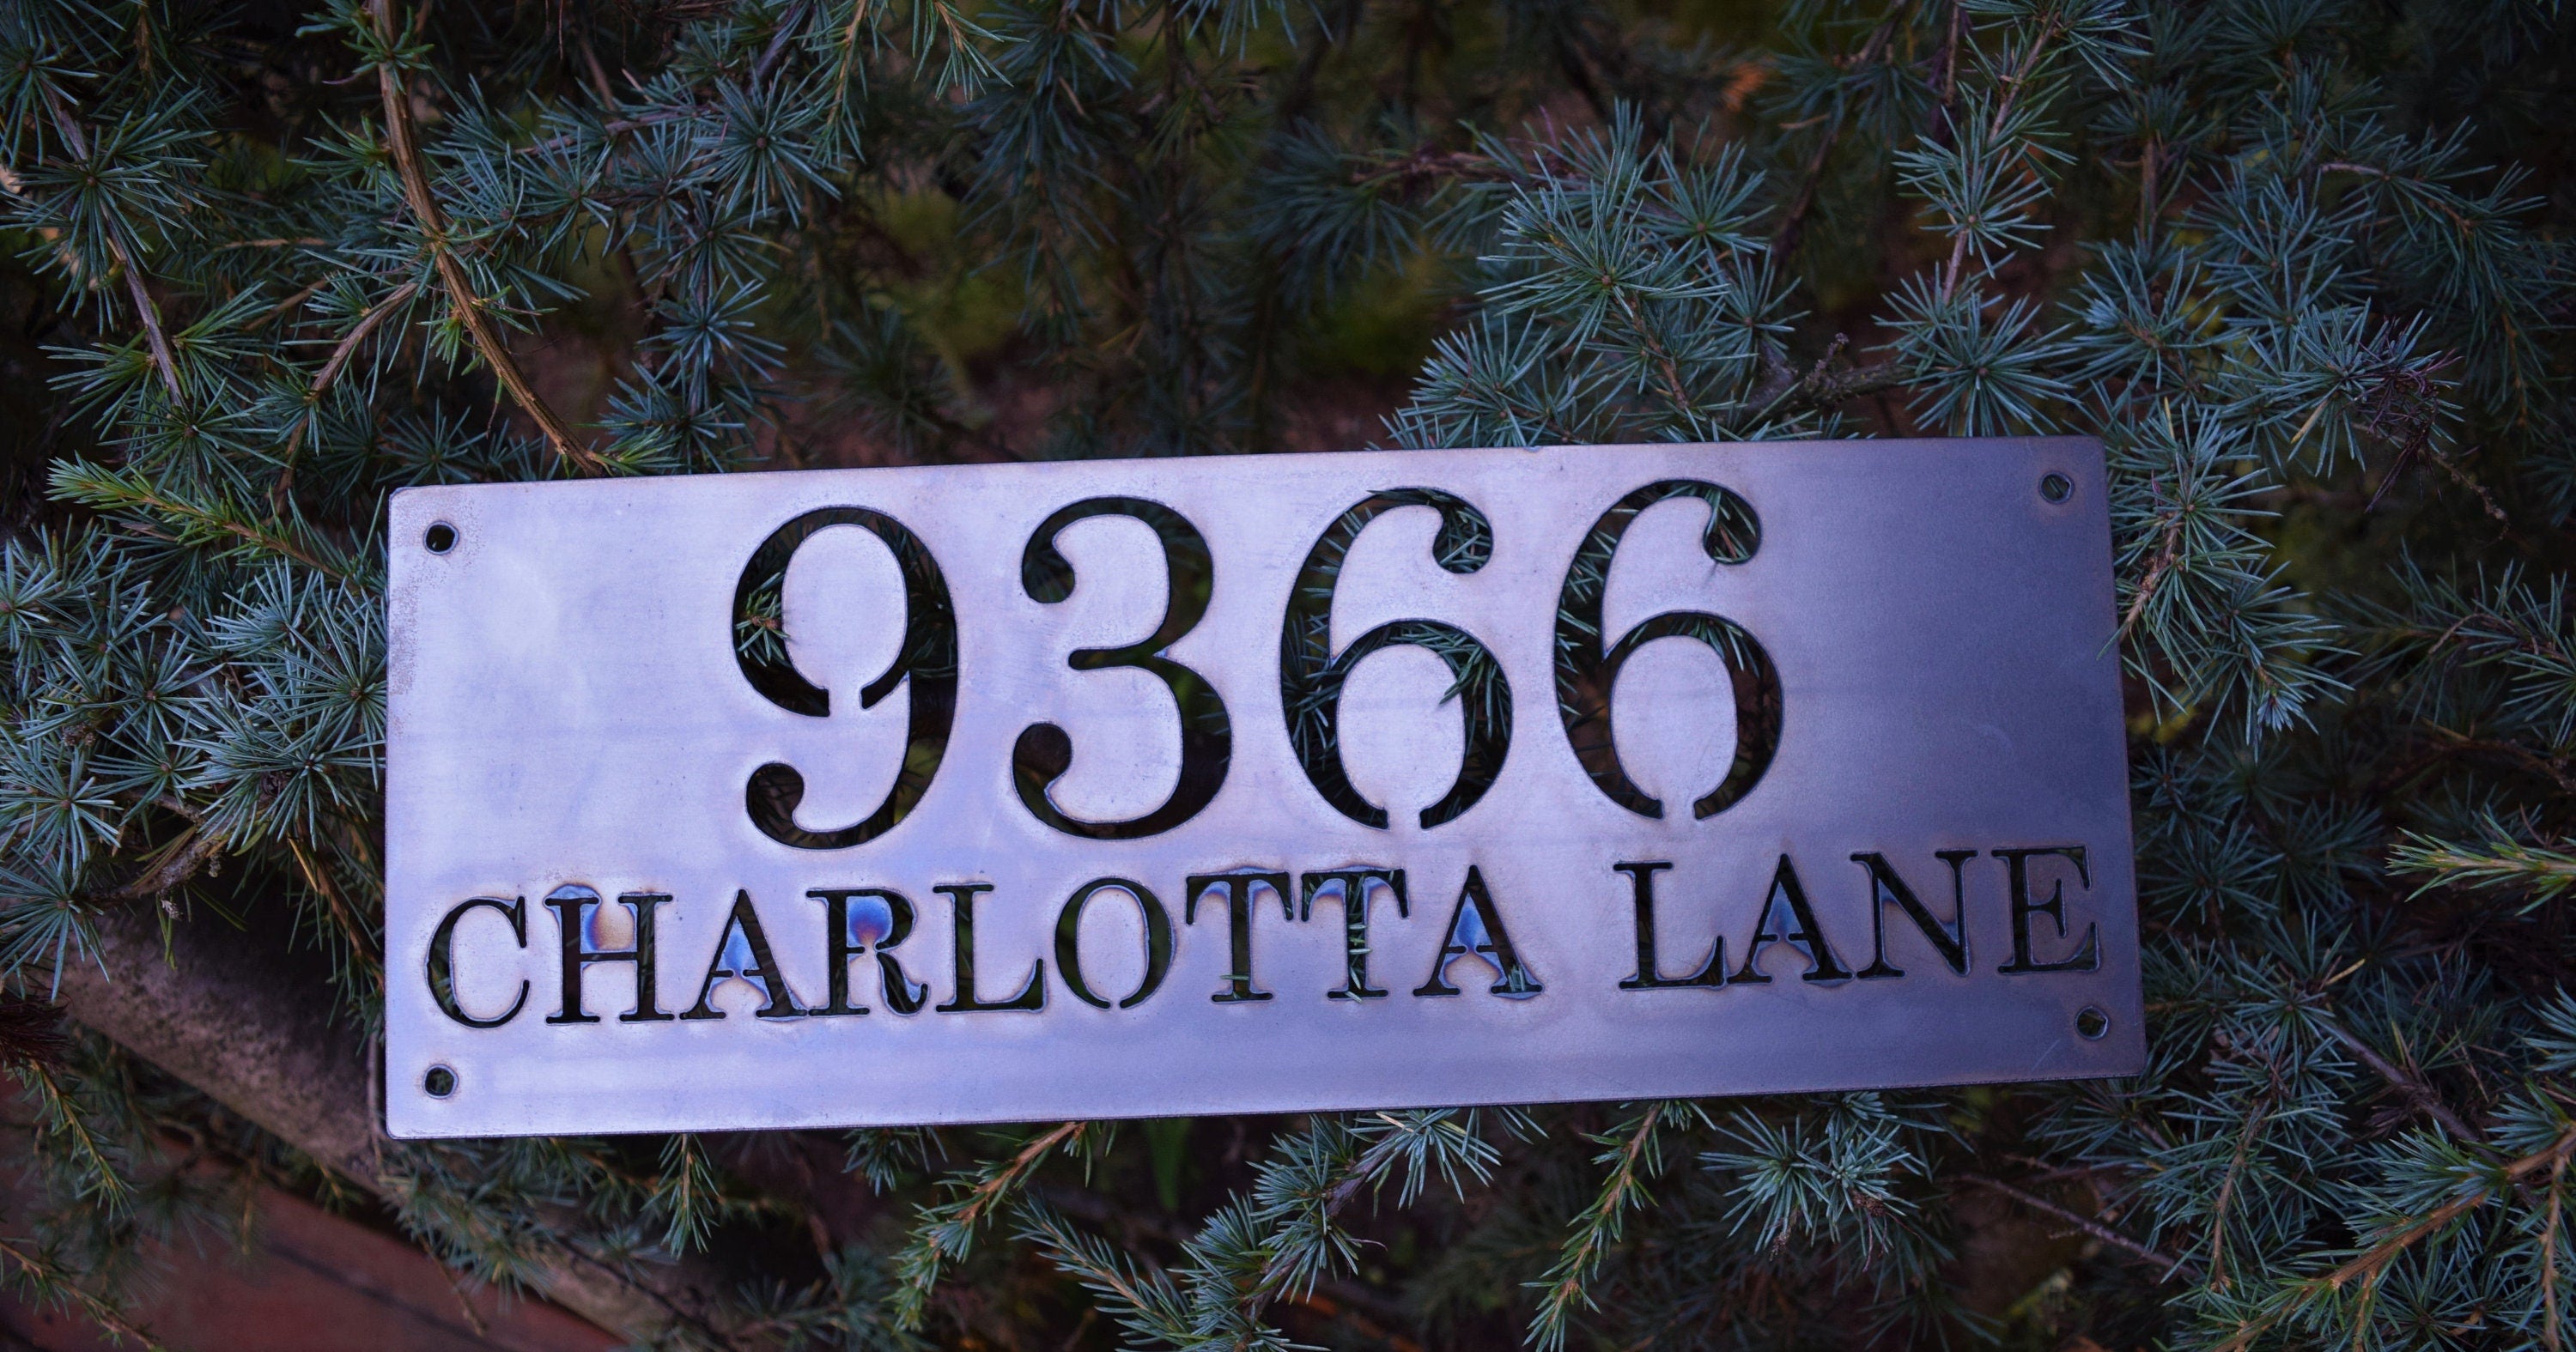 Horizontal Metal Home Address Numbers and Street Name